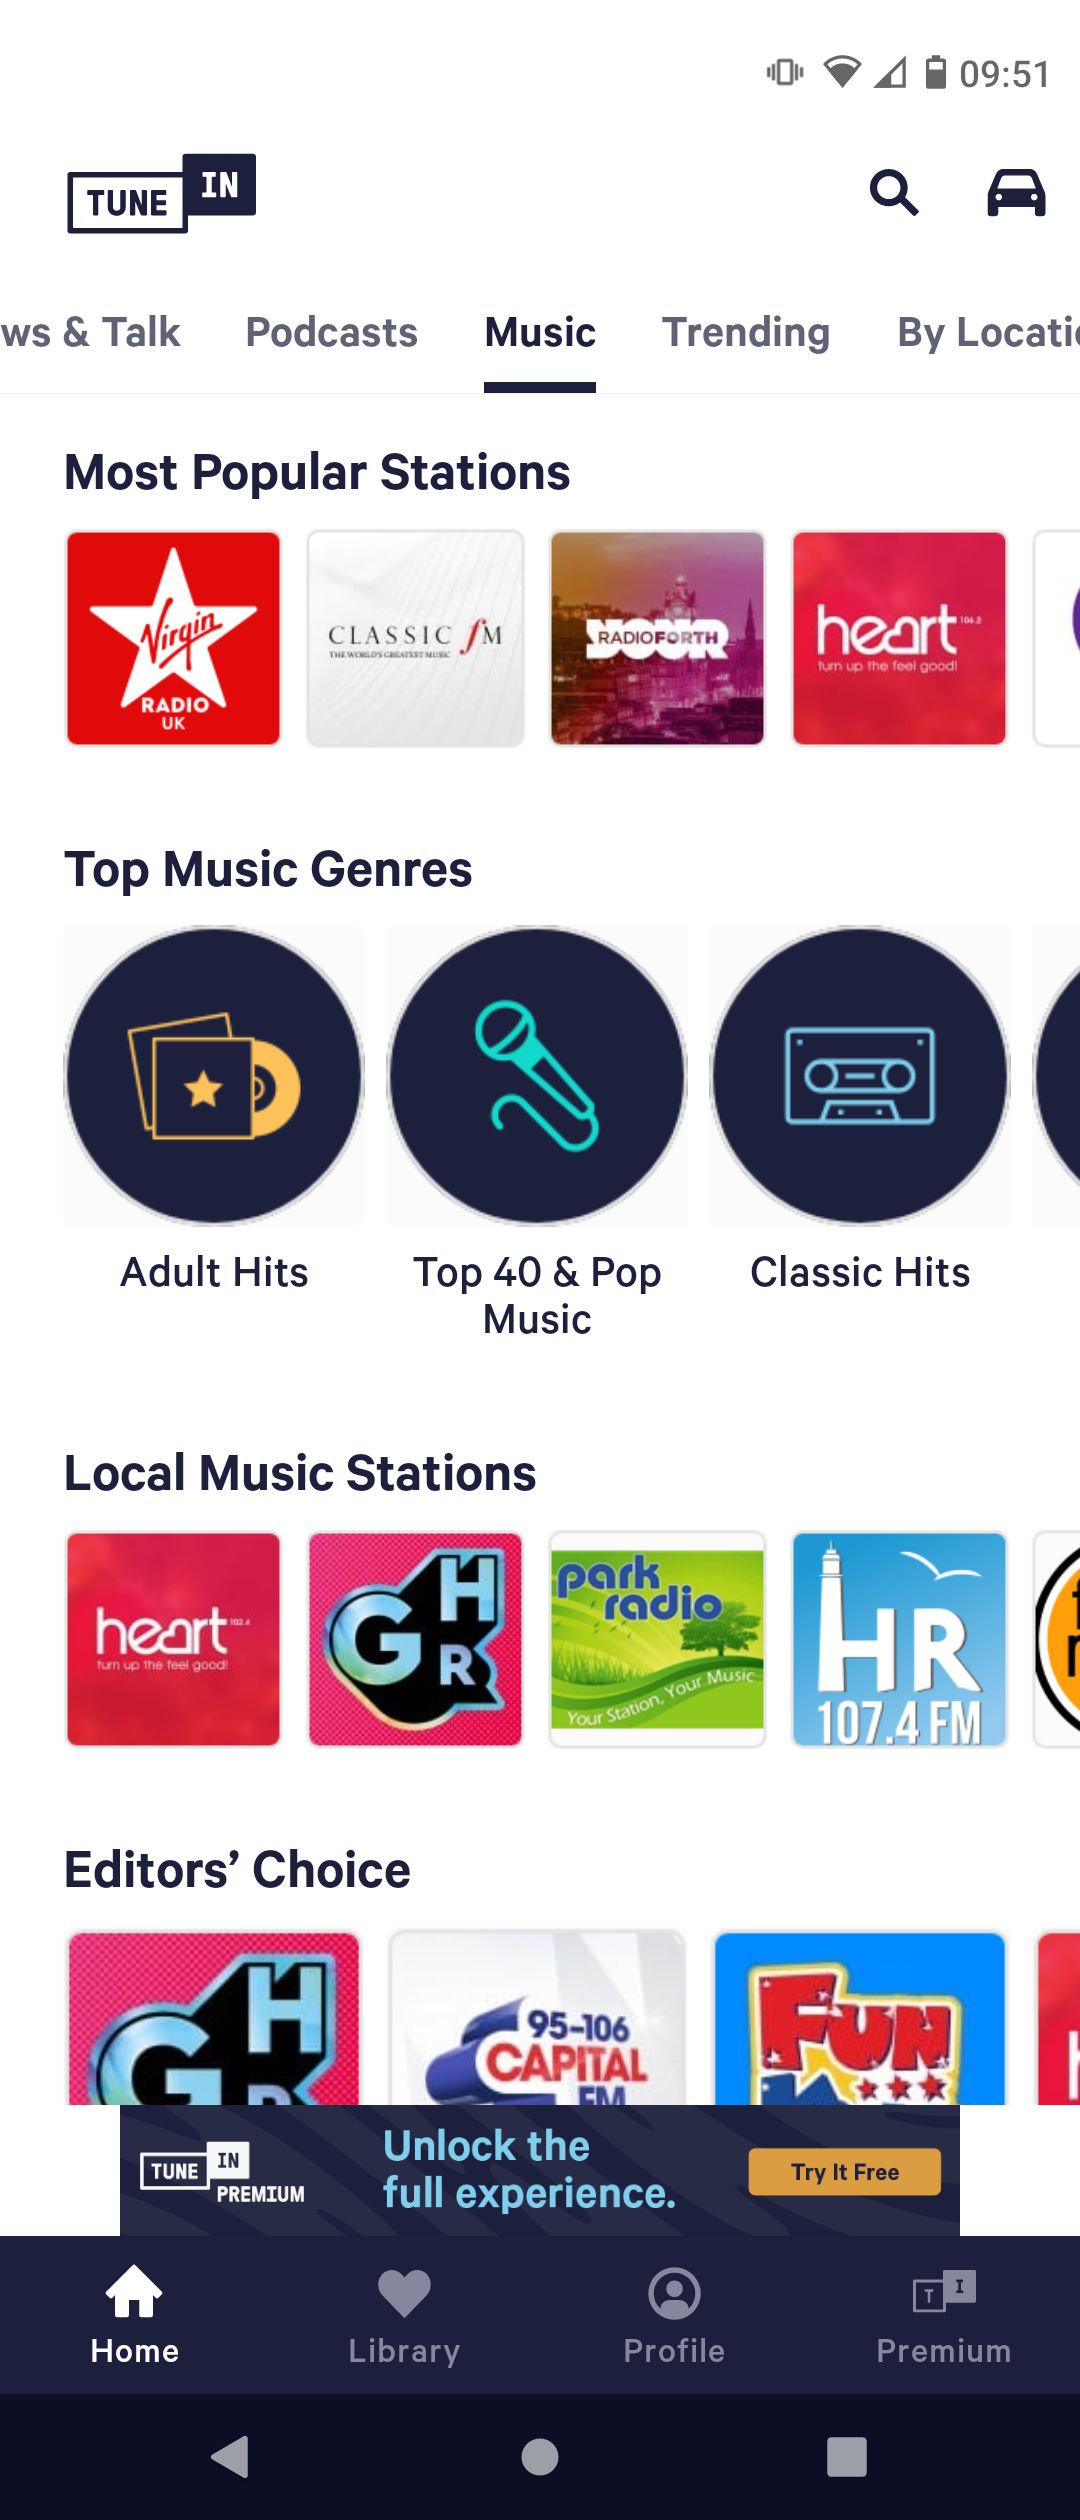 Music Features on TuneIn Radio App